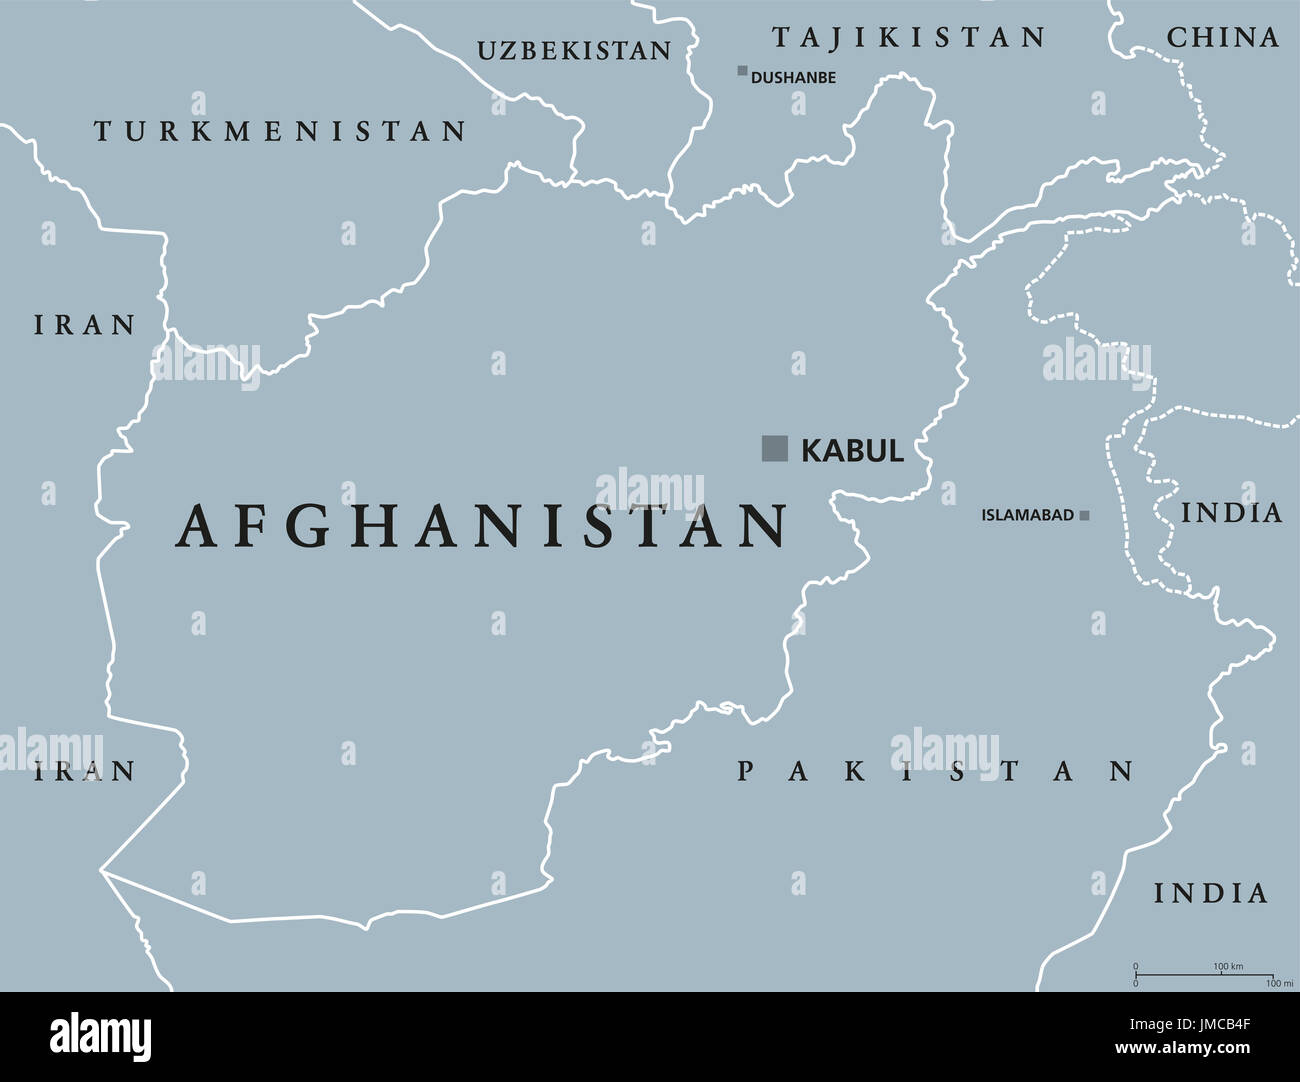 Afghanistan mappa politico con capitale Kabul e frontiere. Repubblica islamica e paese senza sbocco sul mare del Sud e in Asia centrale. Illustrazione di grigio. Foto Stock